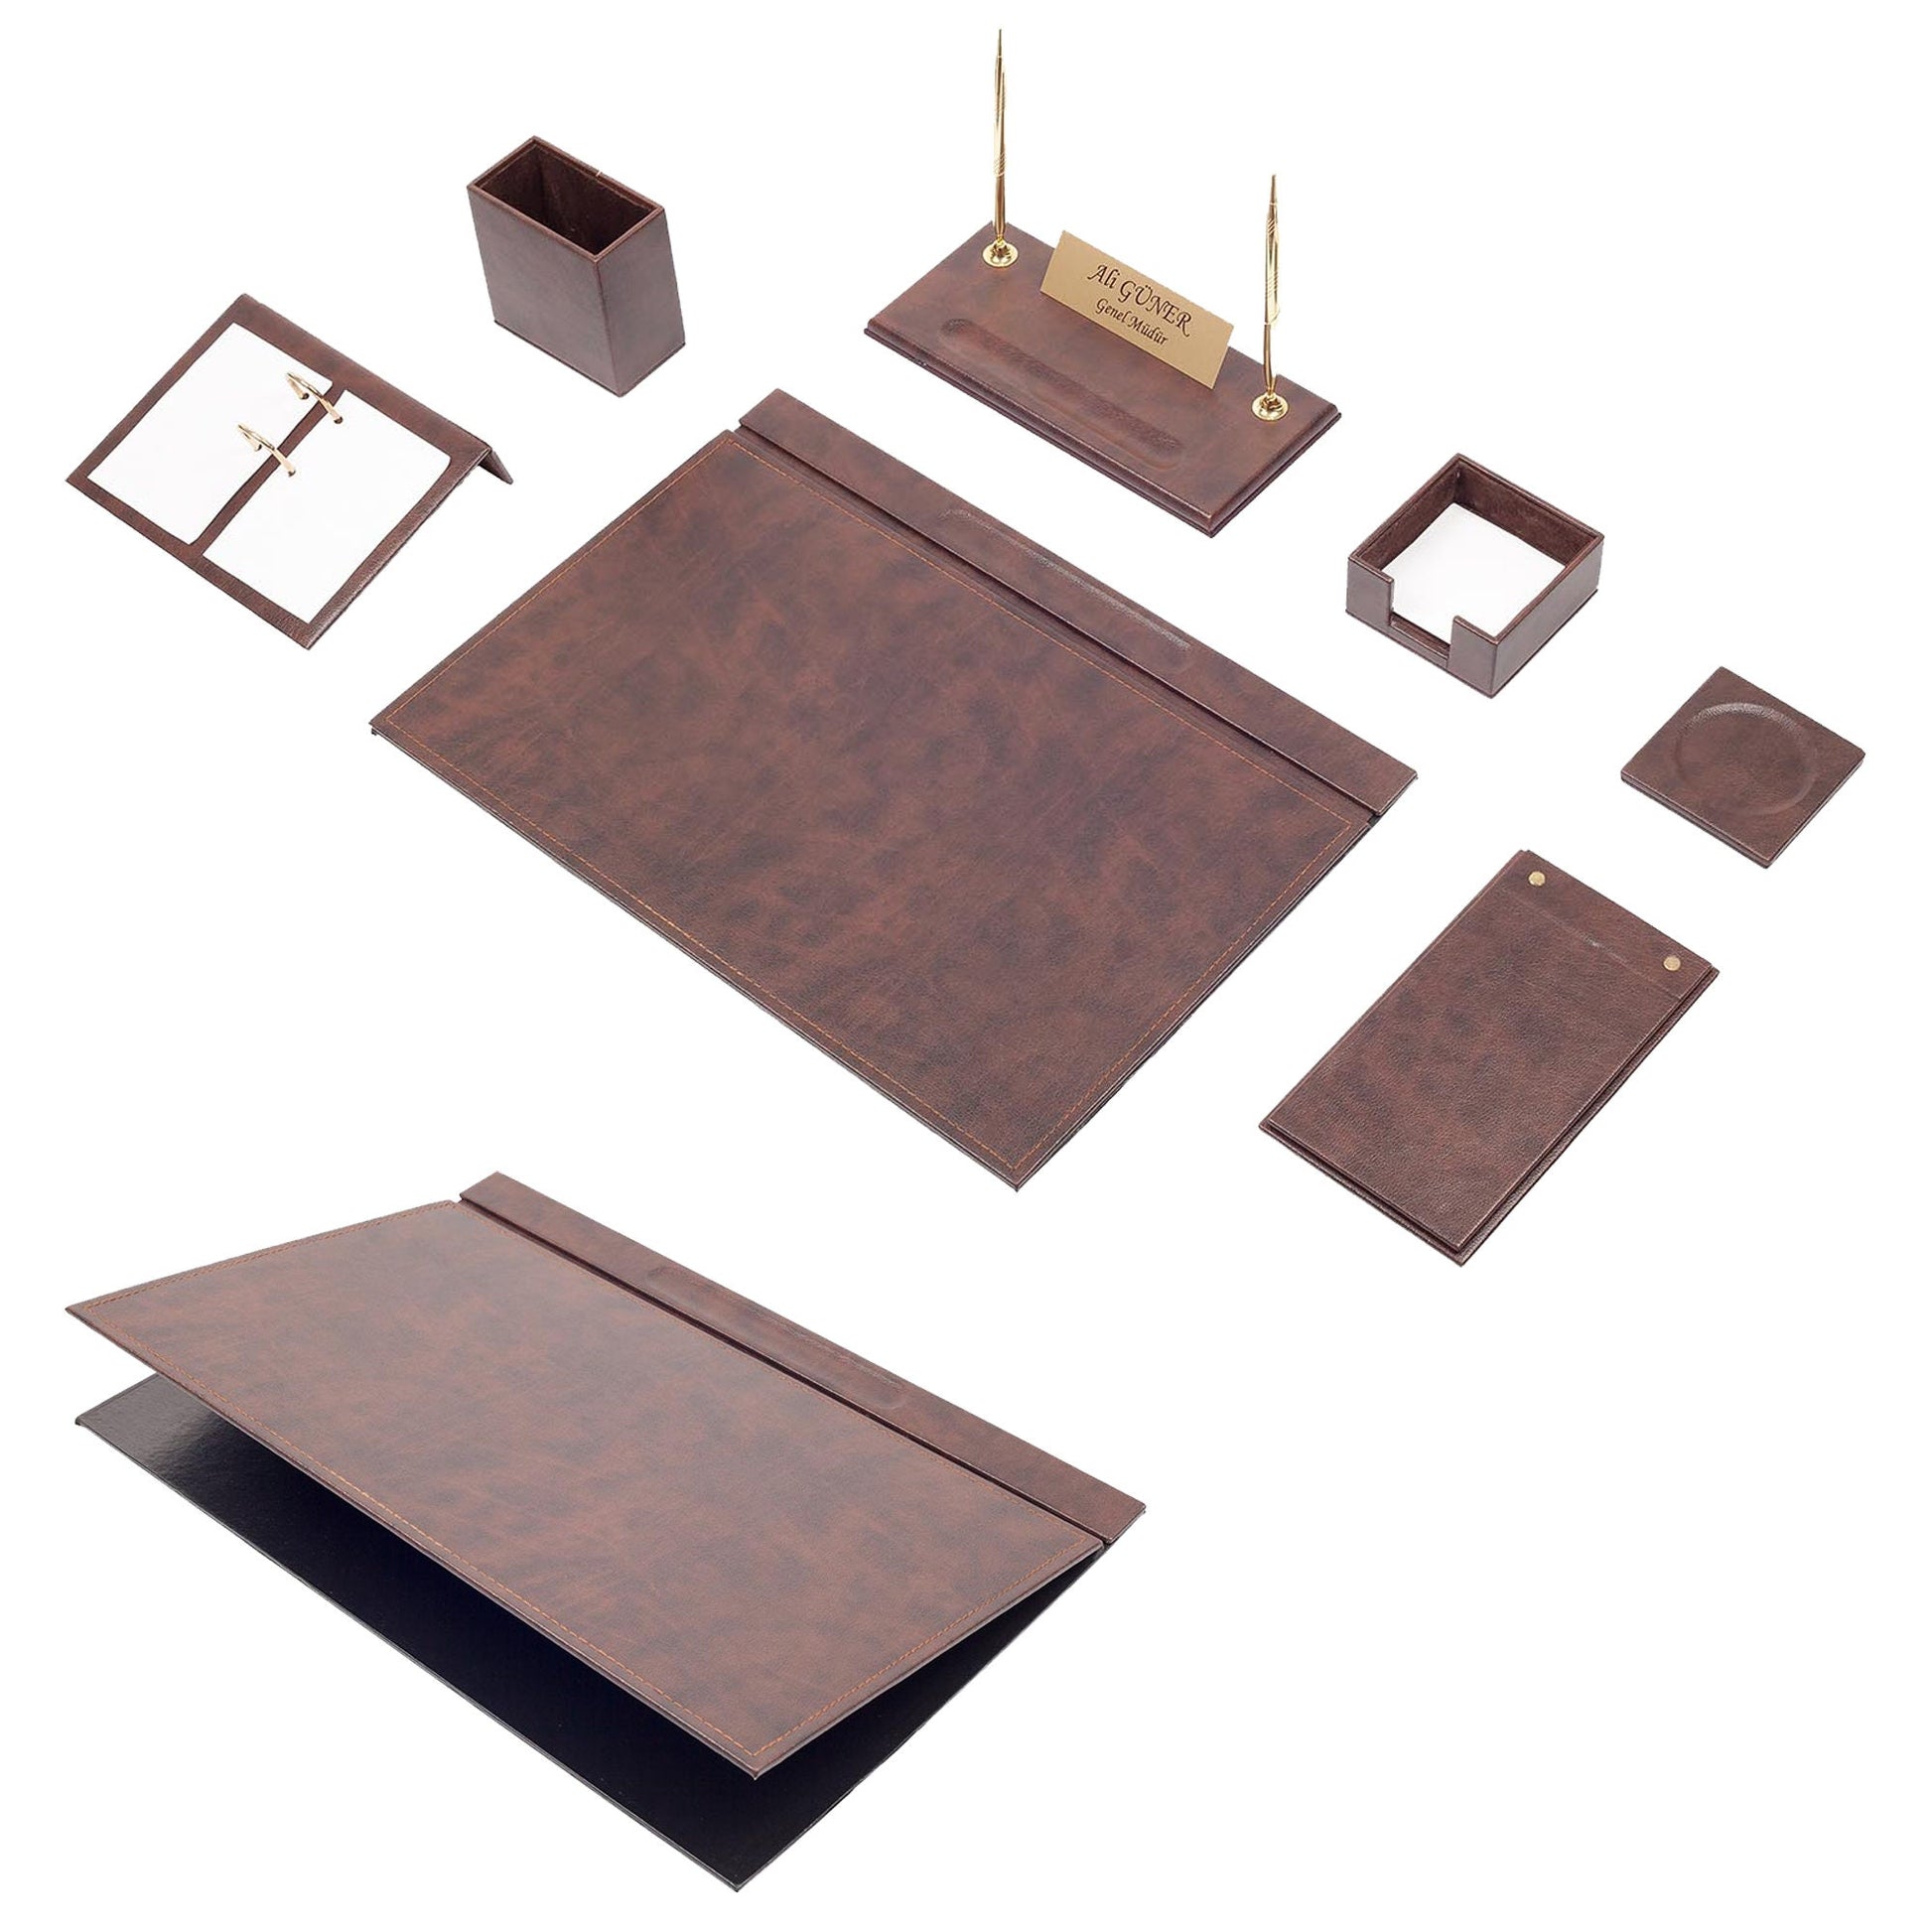 MOOG Leather Desk Set - Desk Organizer Set - Office Desk Pad Accessories -  Calendar holder - 9 Accessories-Desk Organizer - Office Desk Accessories 